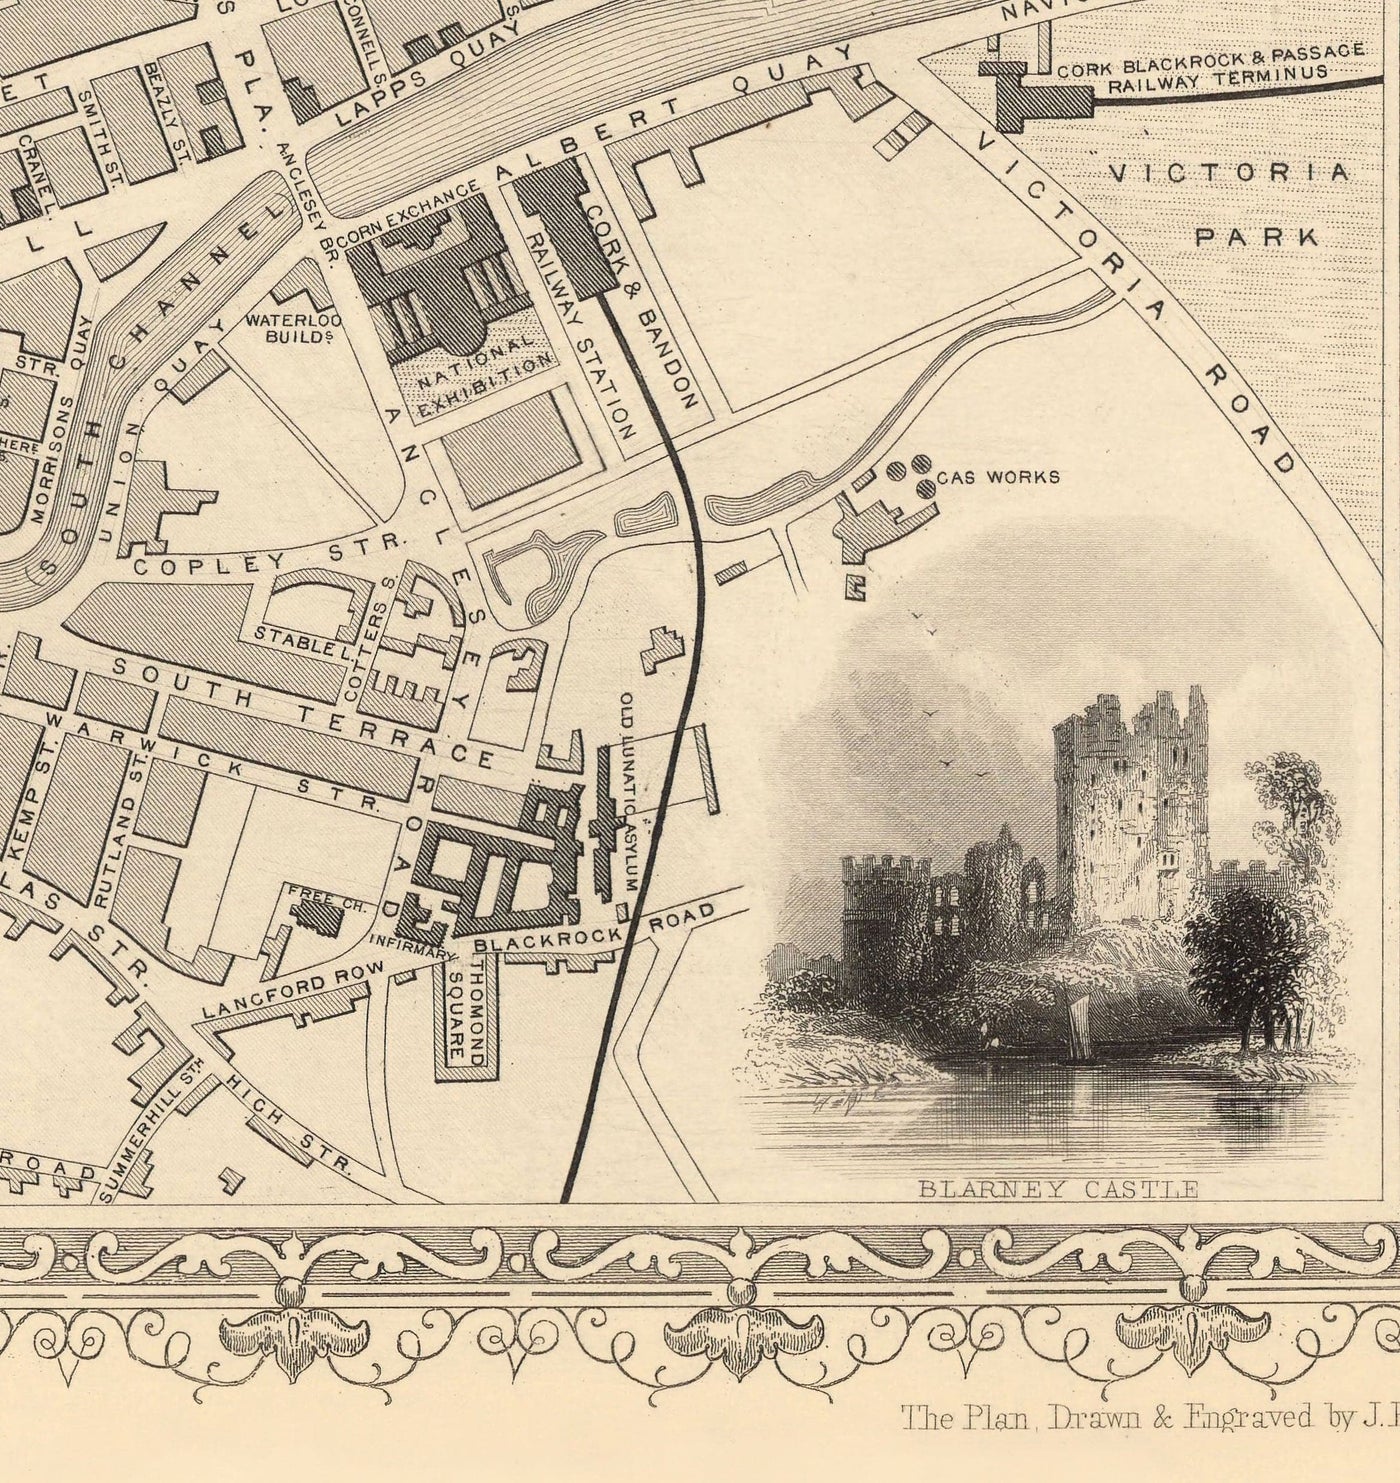 Alte Karte von Kork, Irland, 1851 von Tallis & Rapkin - viktorianisches Viertel, Zentral, Popes Kai, Fluss Lee, Münster